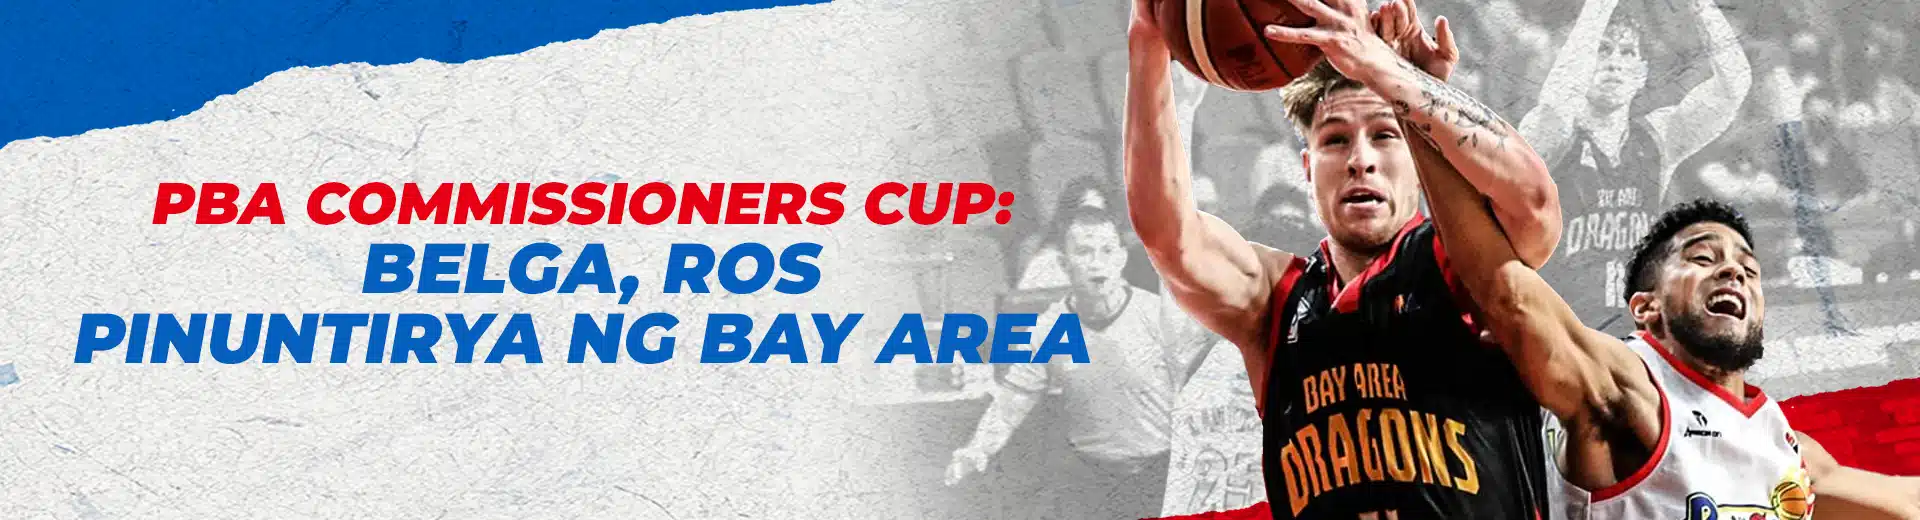 PBA Commissioner’s Cup: Belga, RoS Pinuntirya ng Bay Area